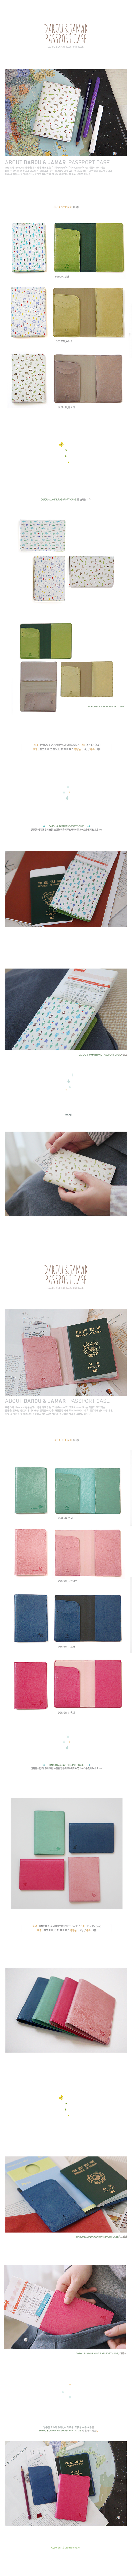 DAROU n JAMAR PASSPORT CASE 16,800원 - 플래너리 여행/캠핑, 여권/네임택, 여권케이스, 디자인 케이스 바보사랑 DAROU n JAMAR PASSPORT CASE 16,800원 - 플래너리 여행/캠핑, 여권/네임택, 여권케이스, 디자인 케이스 바보사랑